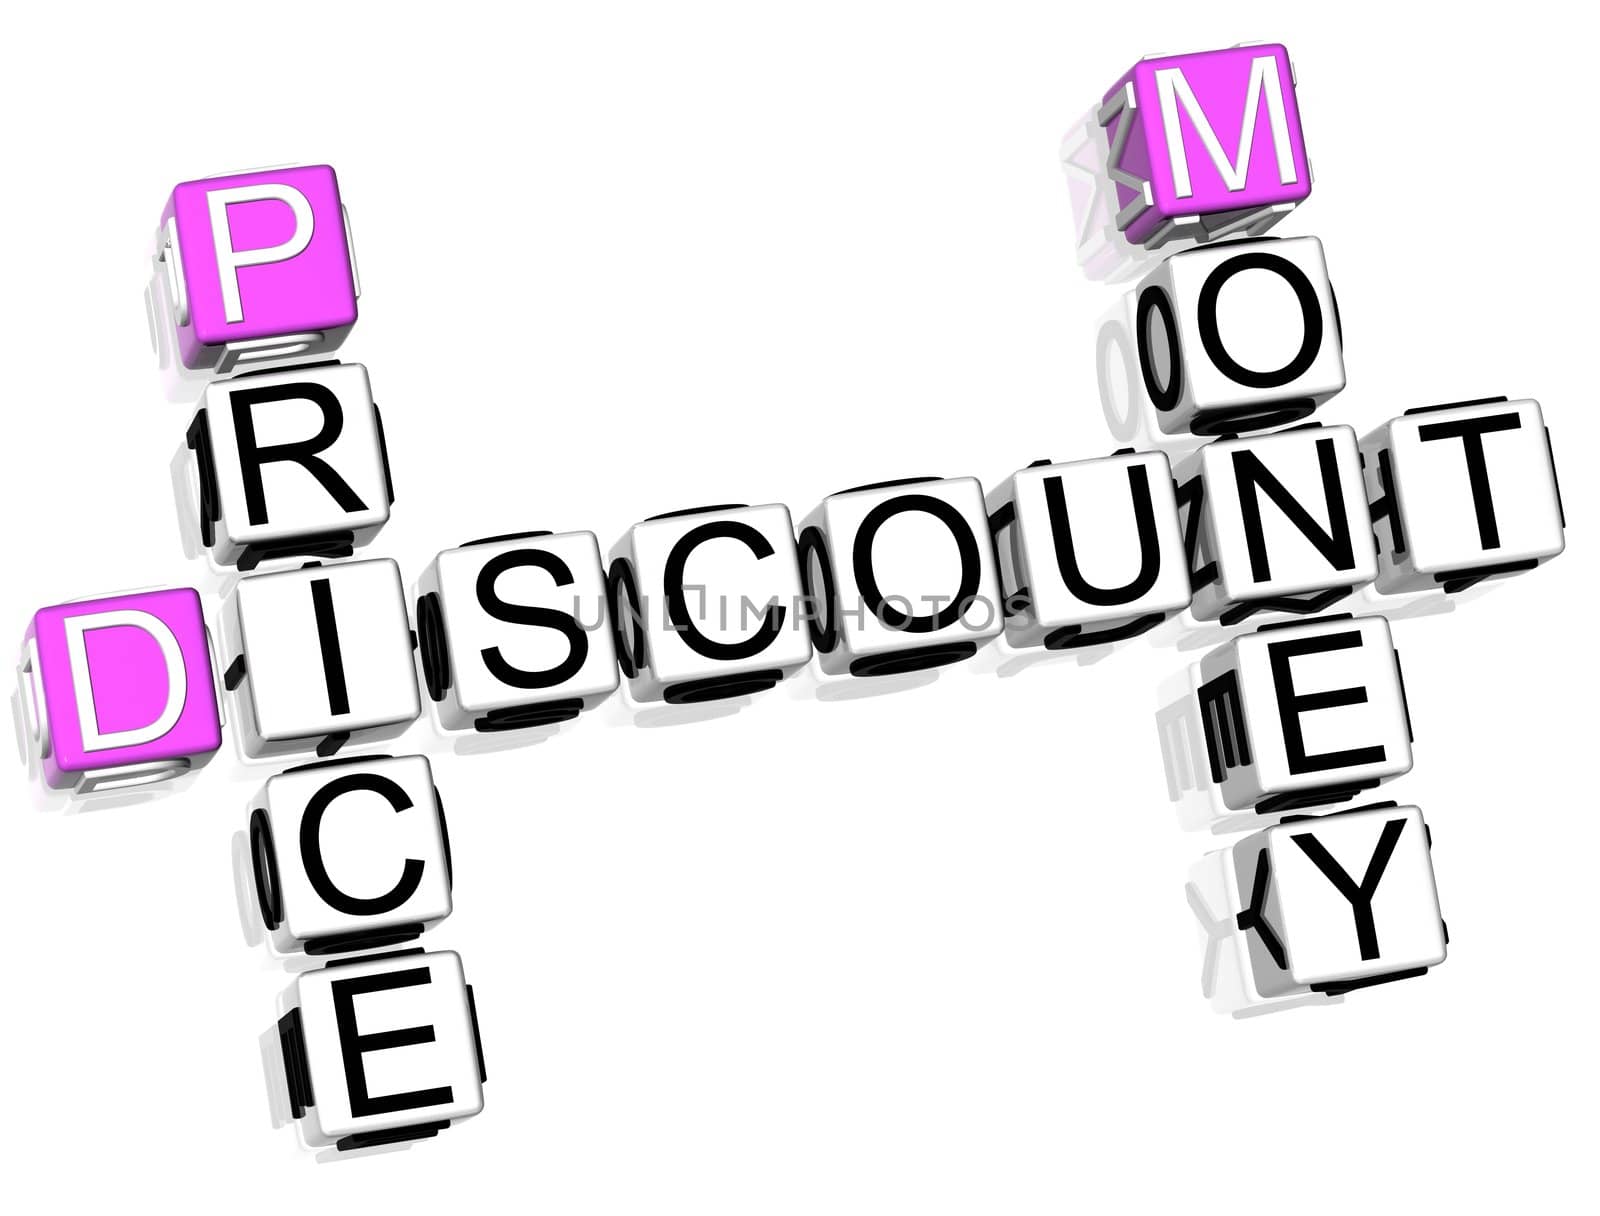 Discount Price Money Crossword by mariusz_prusaczyk